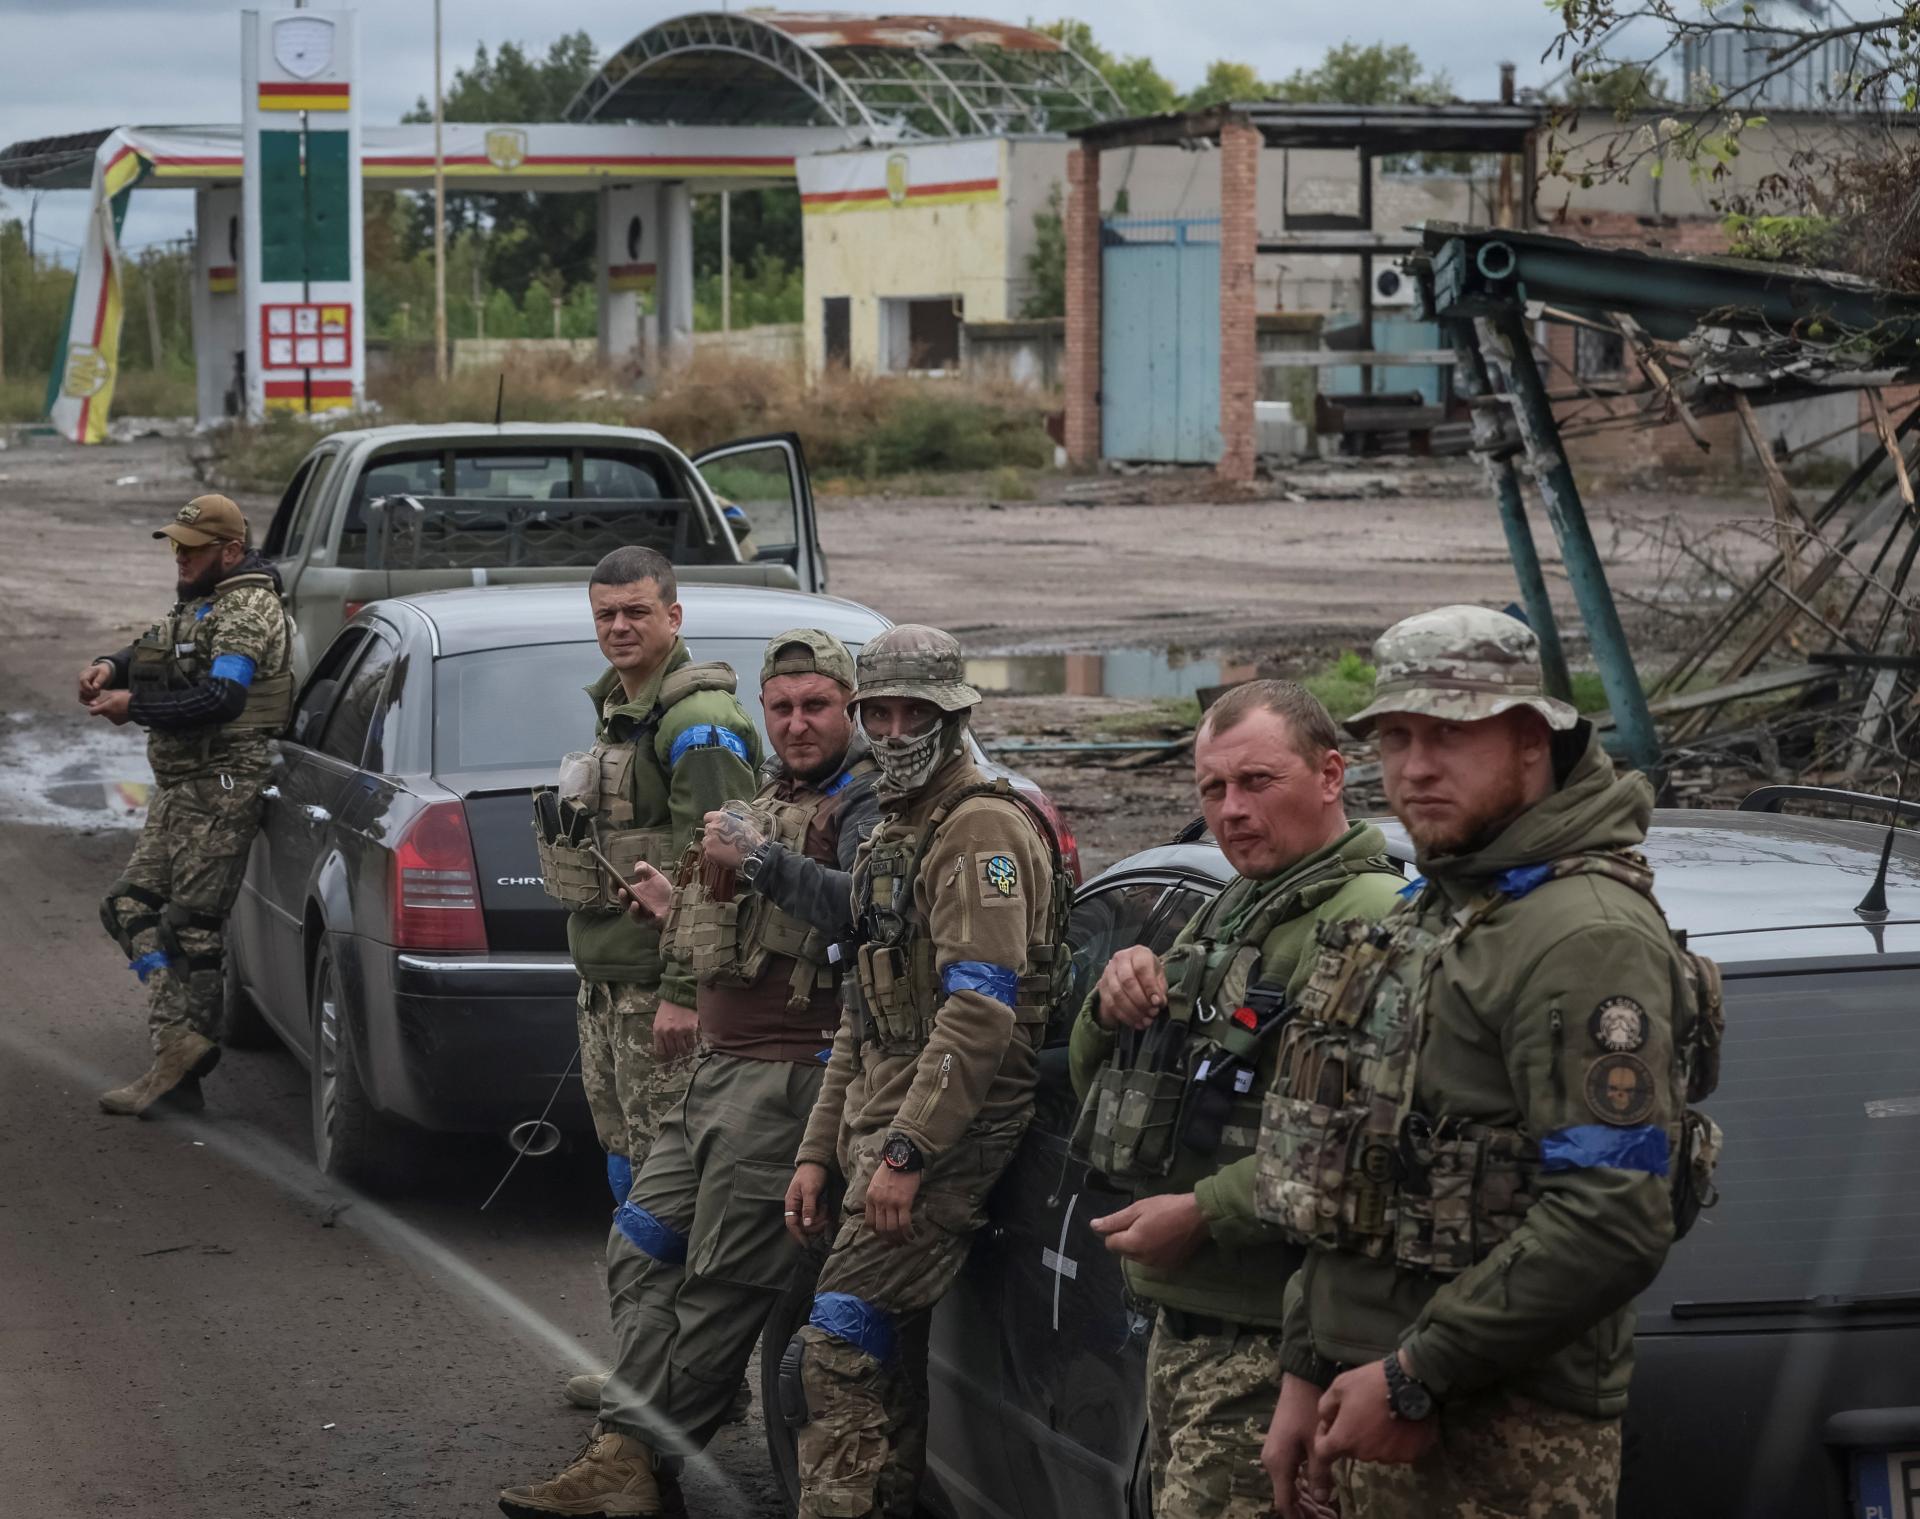 Narastajú obavy z mimoriadne čierneho scenára. Ako sa bude vyvíjať konflikt na Ukrajine? (tri scenáre vojny)